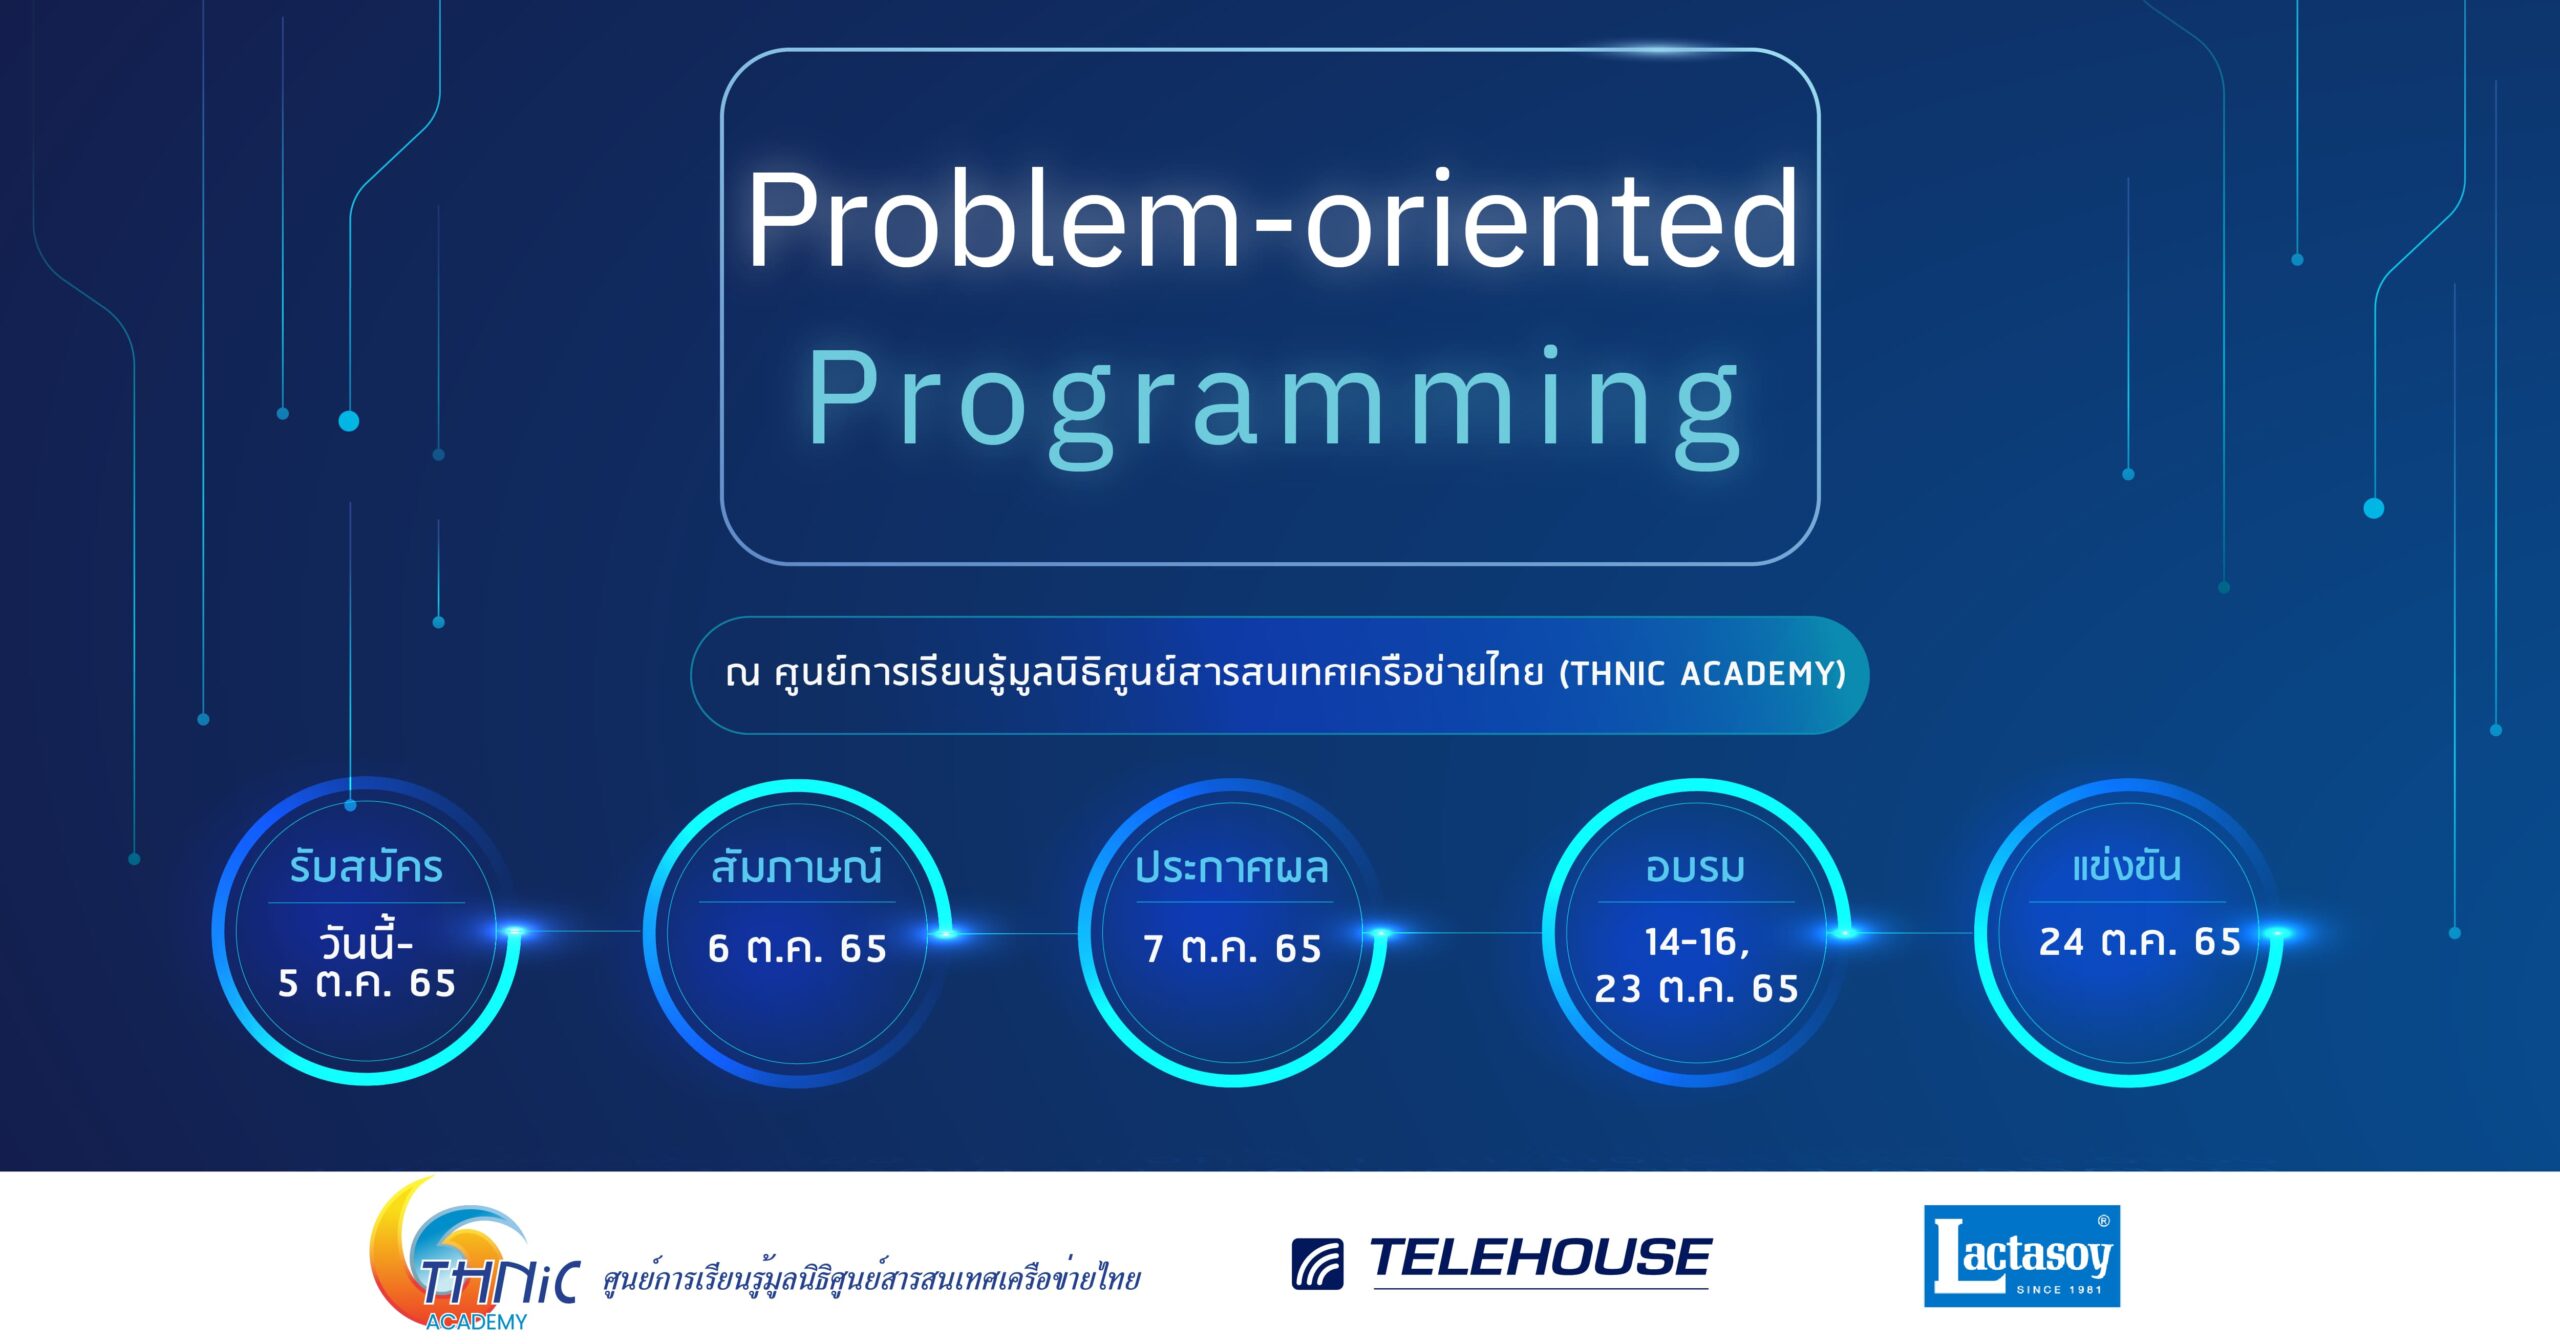 หลักสูตร Problem-oriented Programming